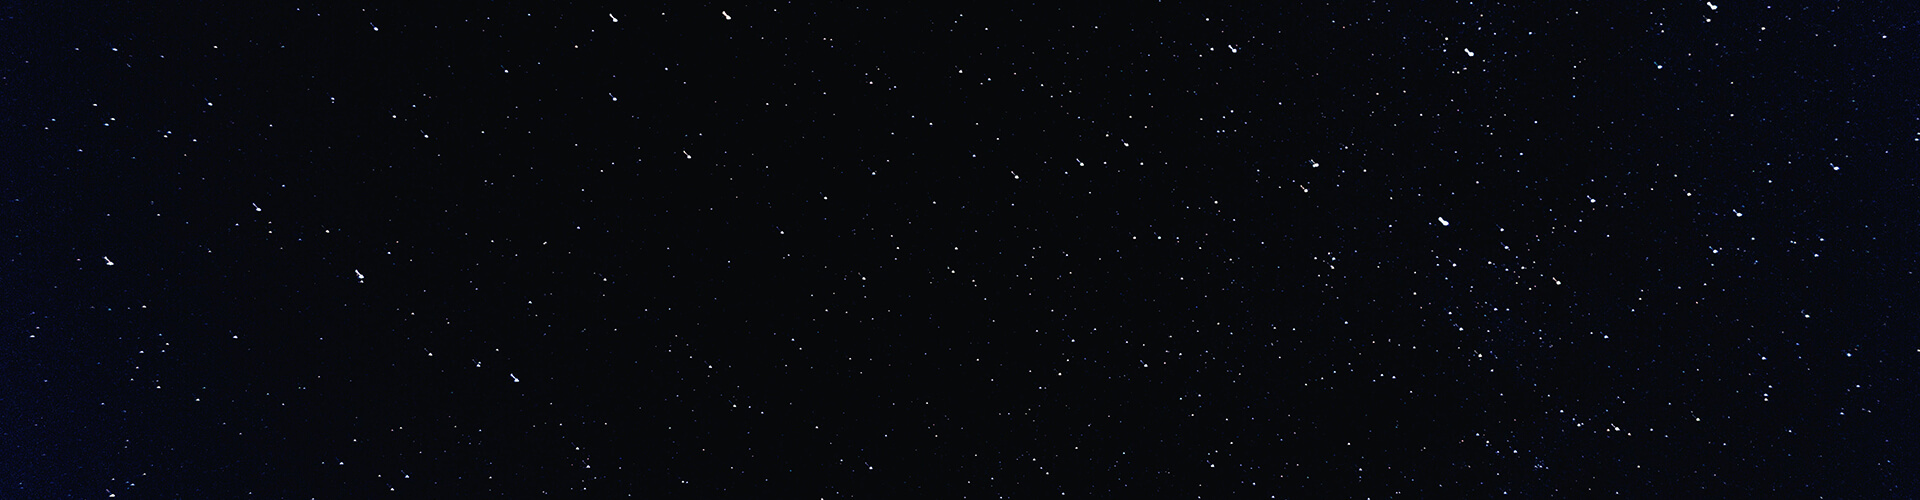 the night sky